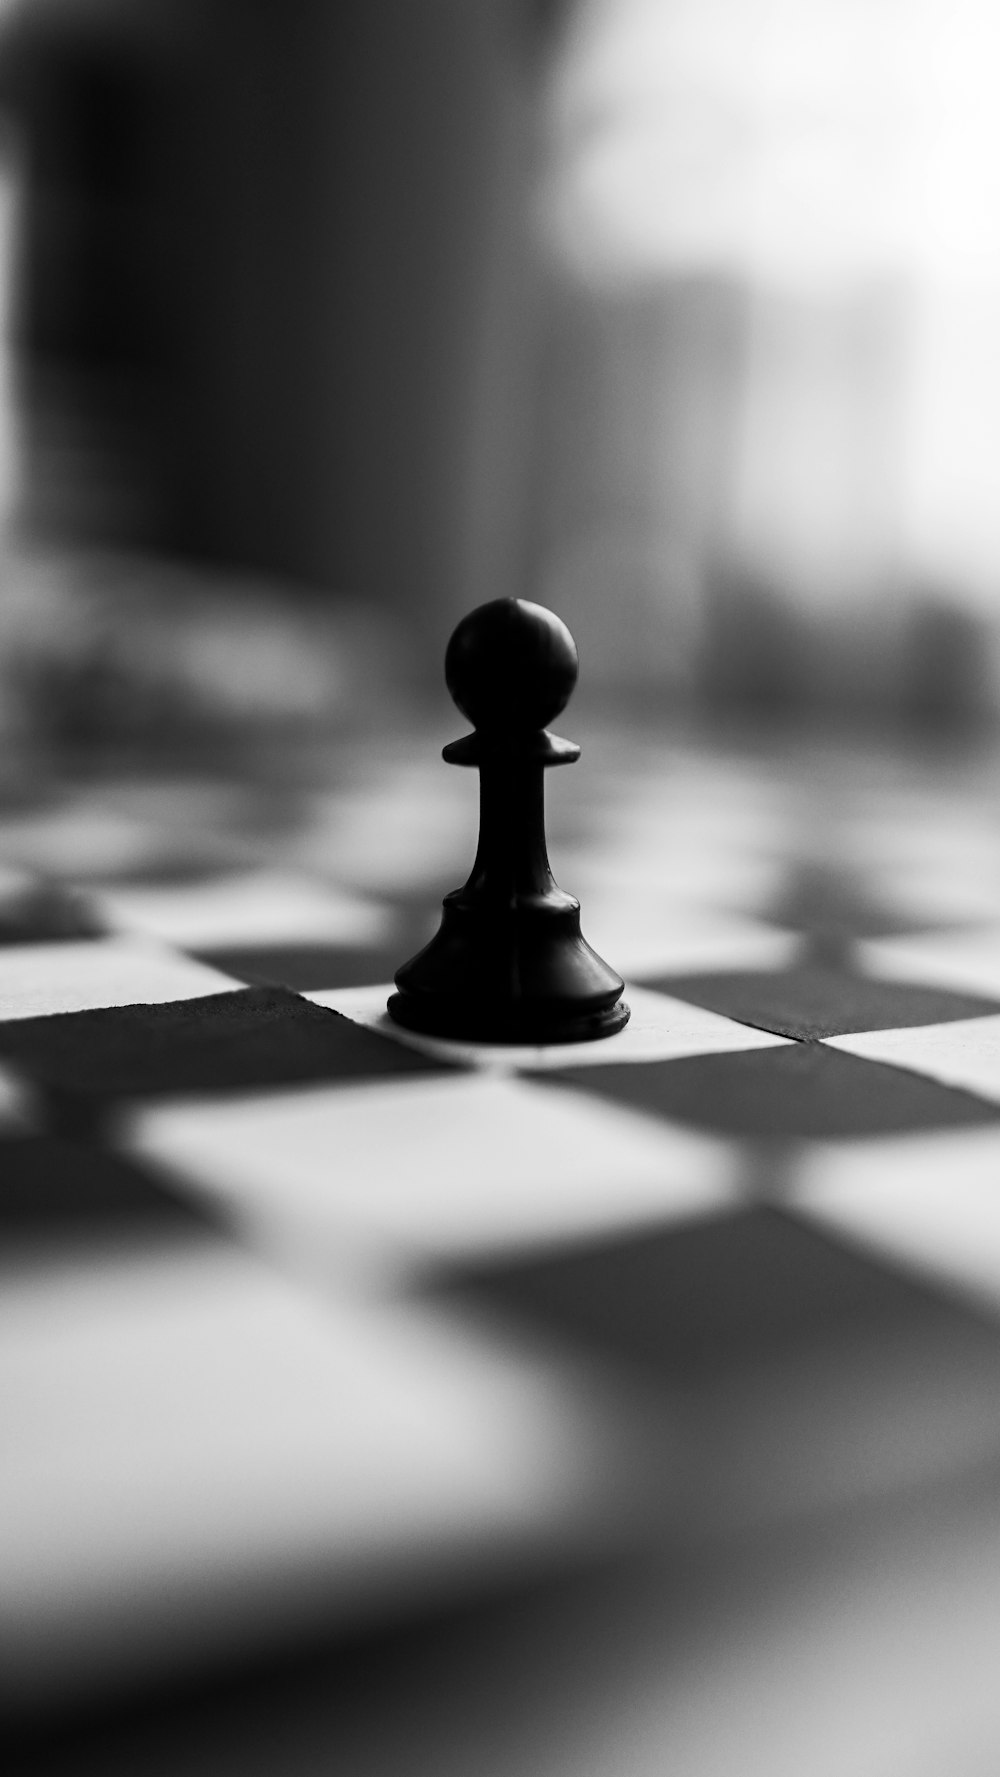 pieza de ajedrez negra sobre tela a cuadros blanca y negra